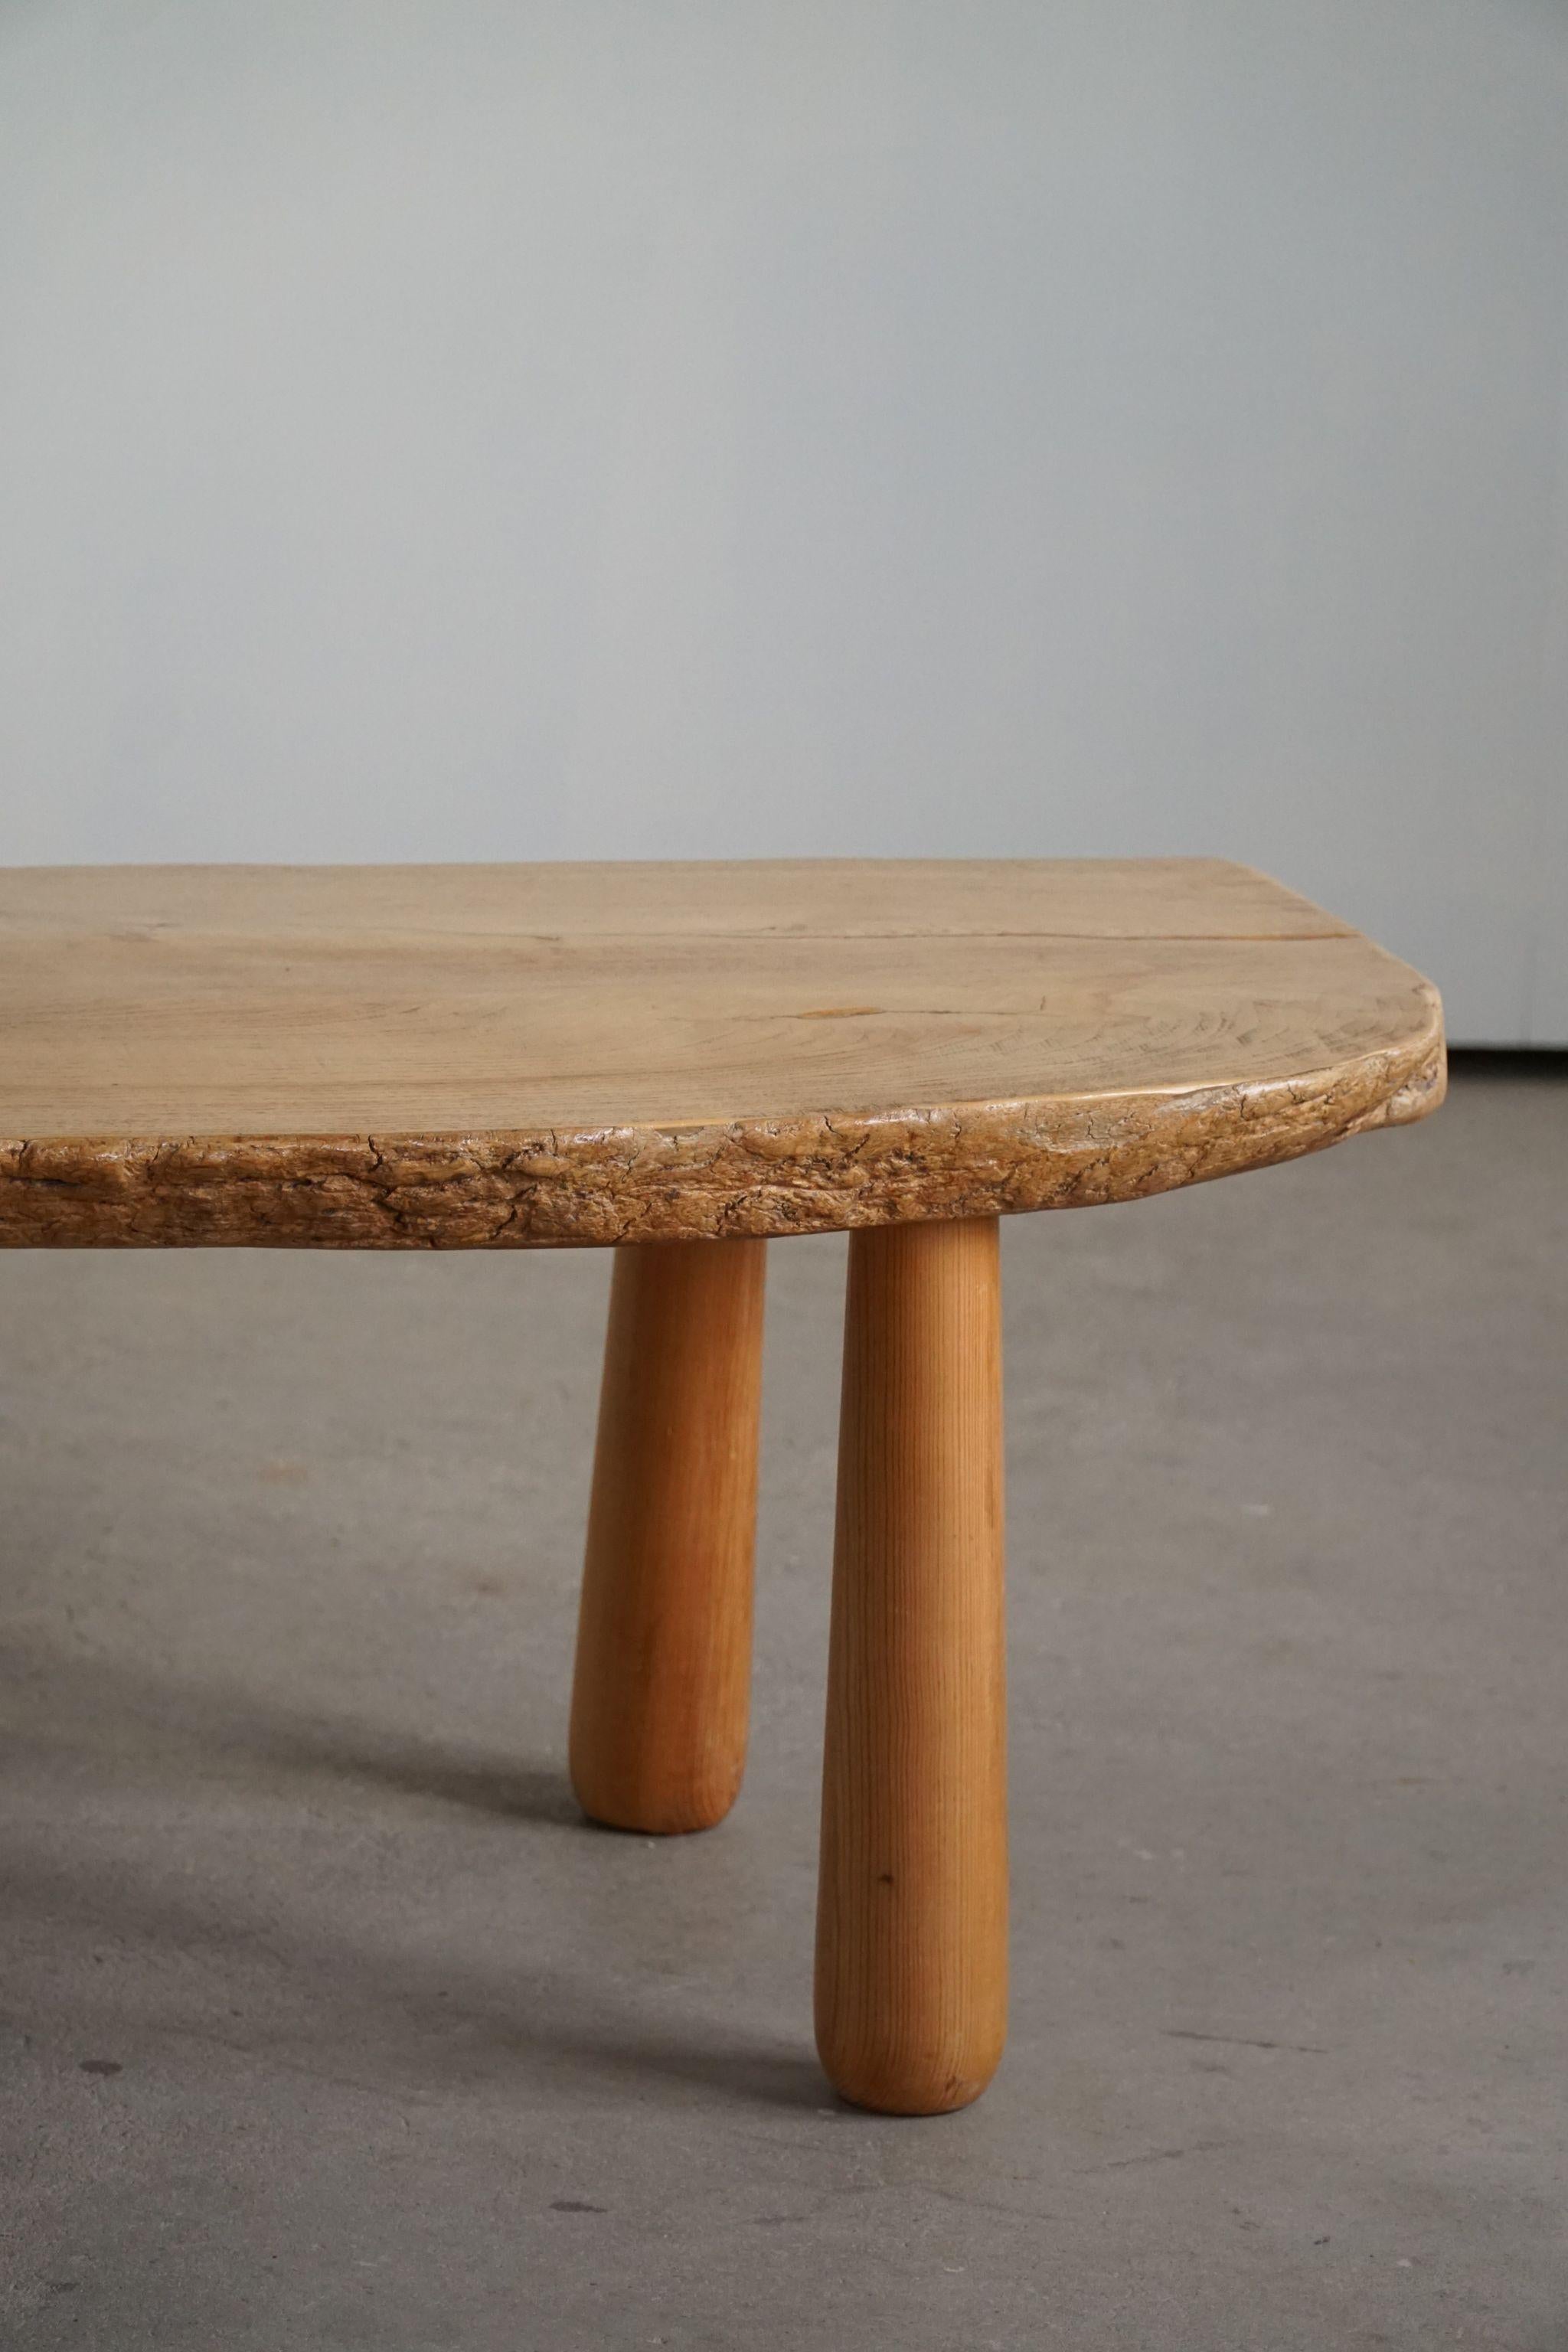 20th Century, Organic Table in Pine with Club Legs, Wabi Sabi, Swedish Modern 14